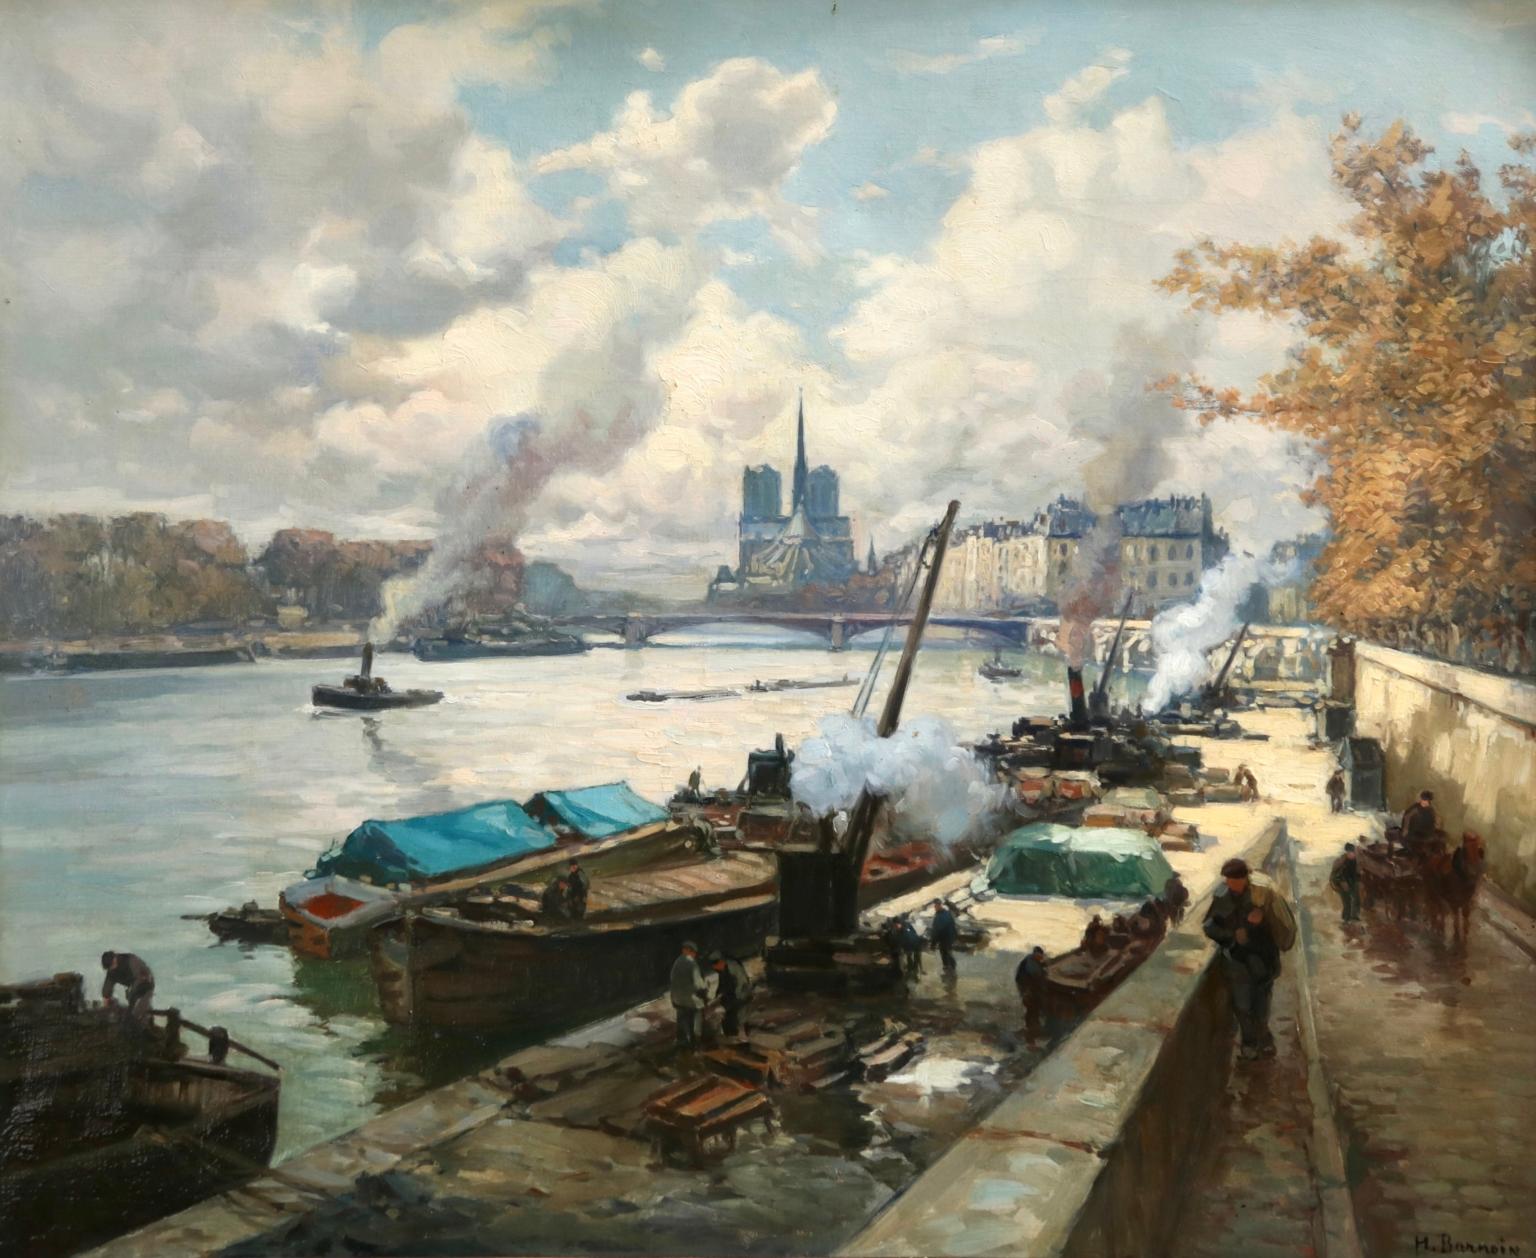 River Seine, Paris - Post Impressionist Oil, Boats in Landscape by Henri Barnoin